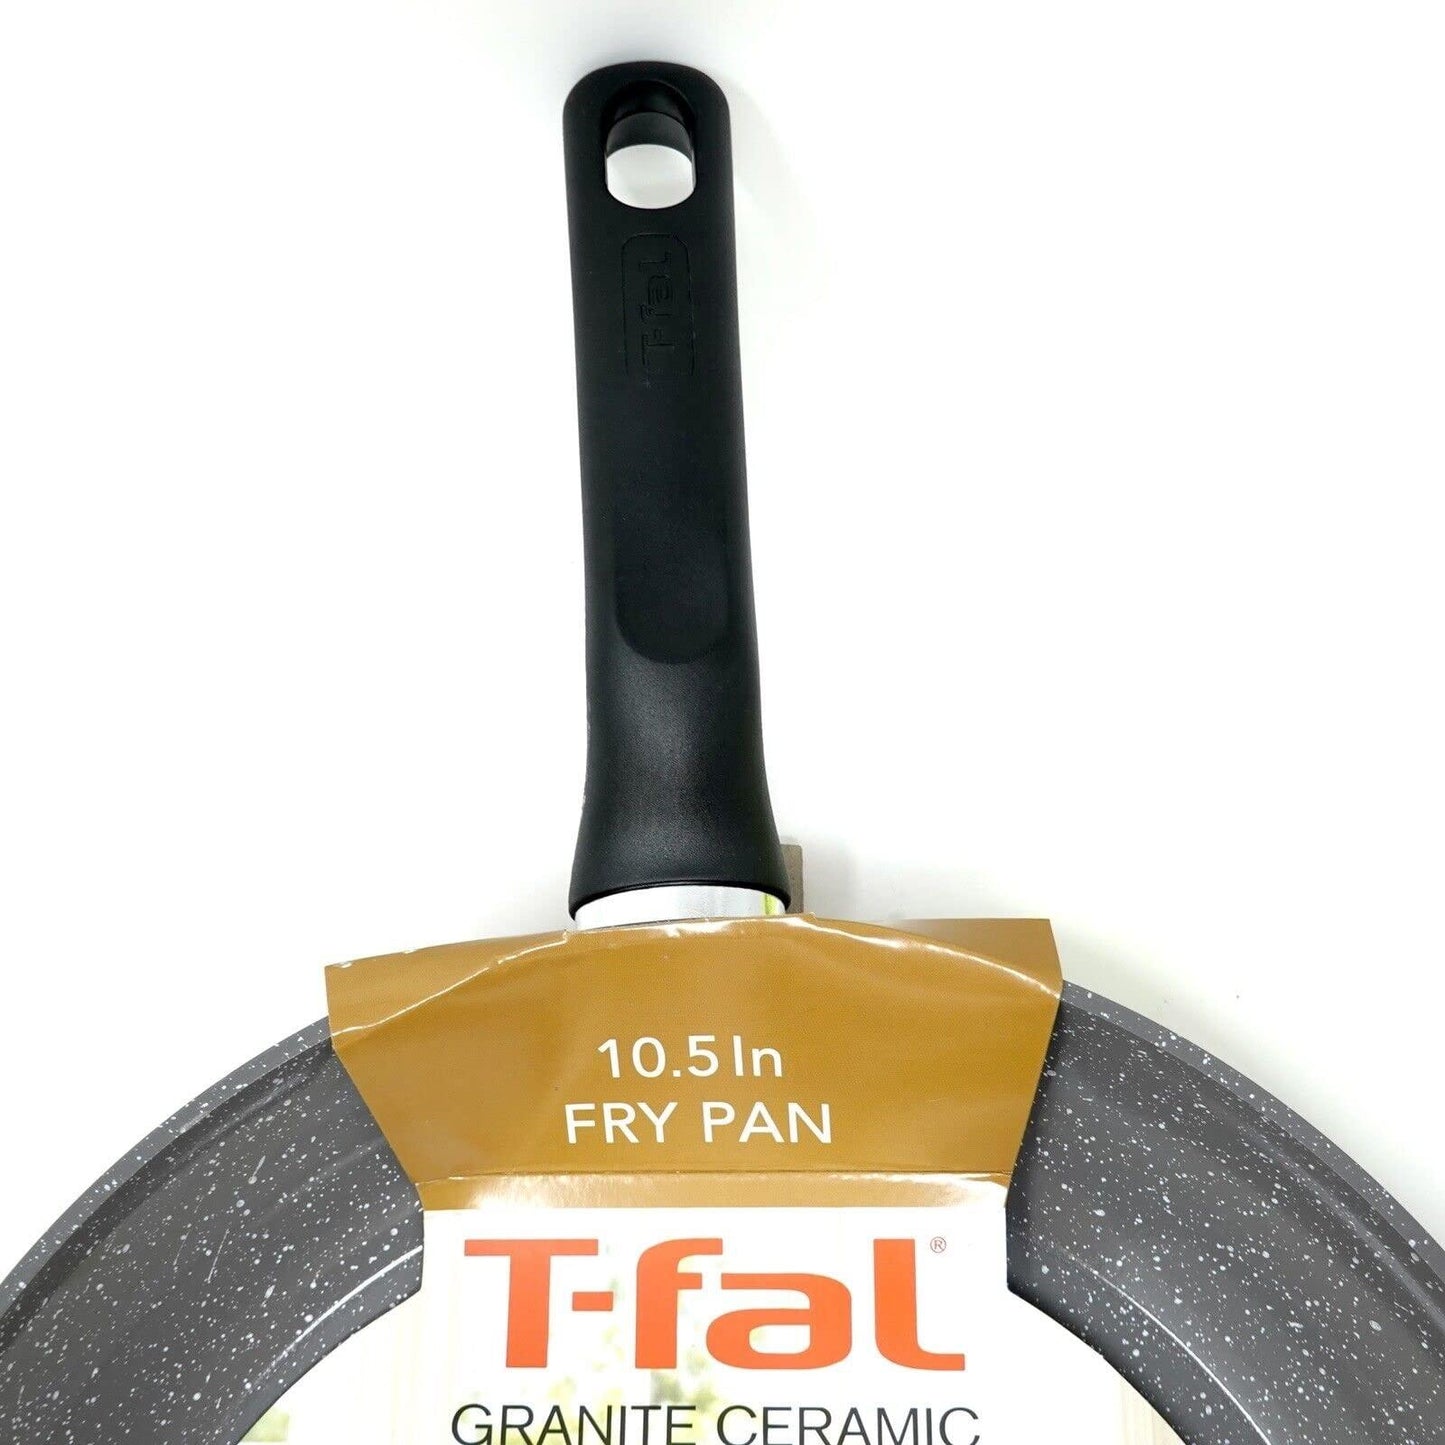 T-fal Granite Ceramic 10.5 Inch Fry Pan - CookCave